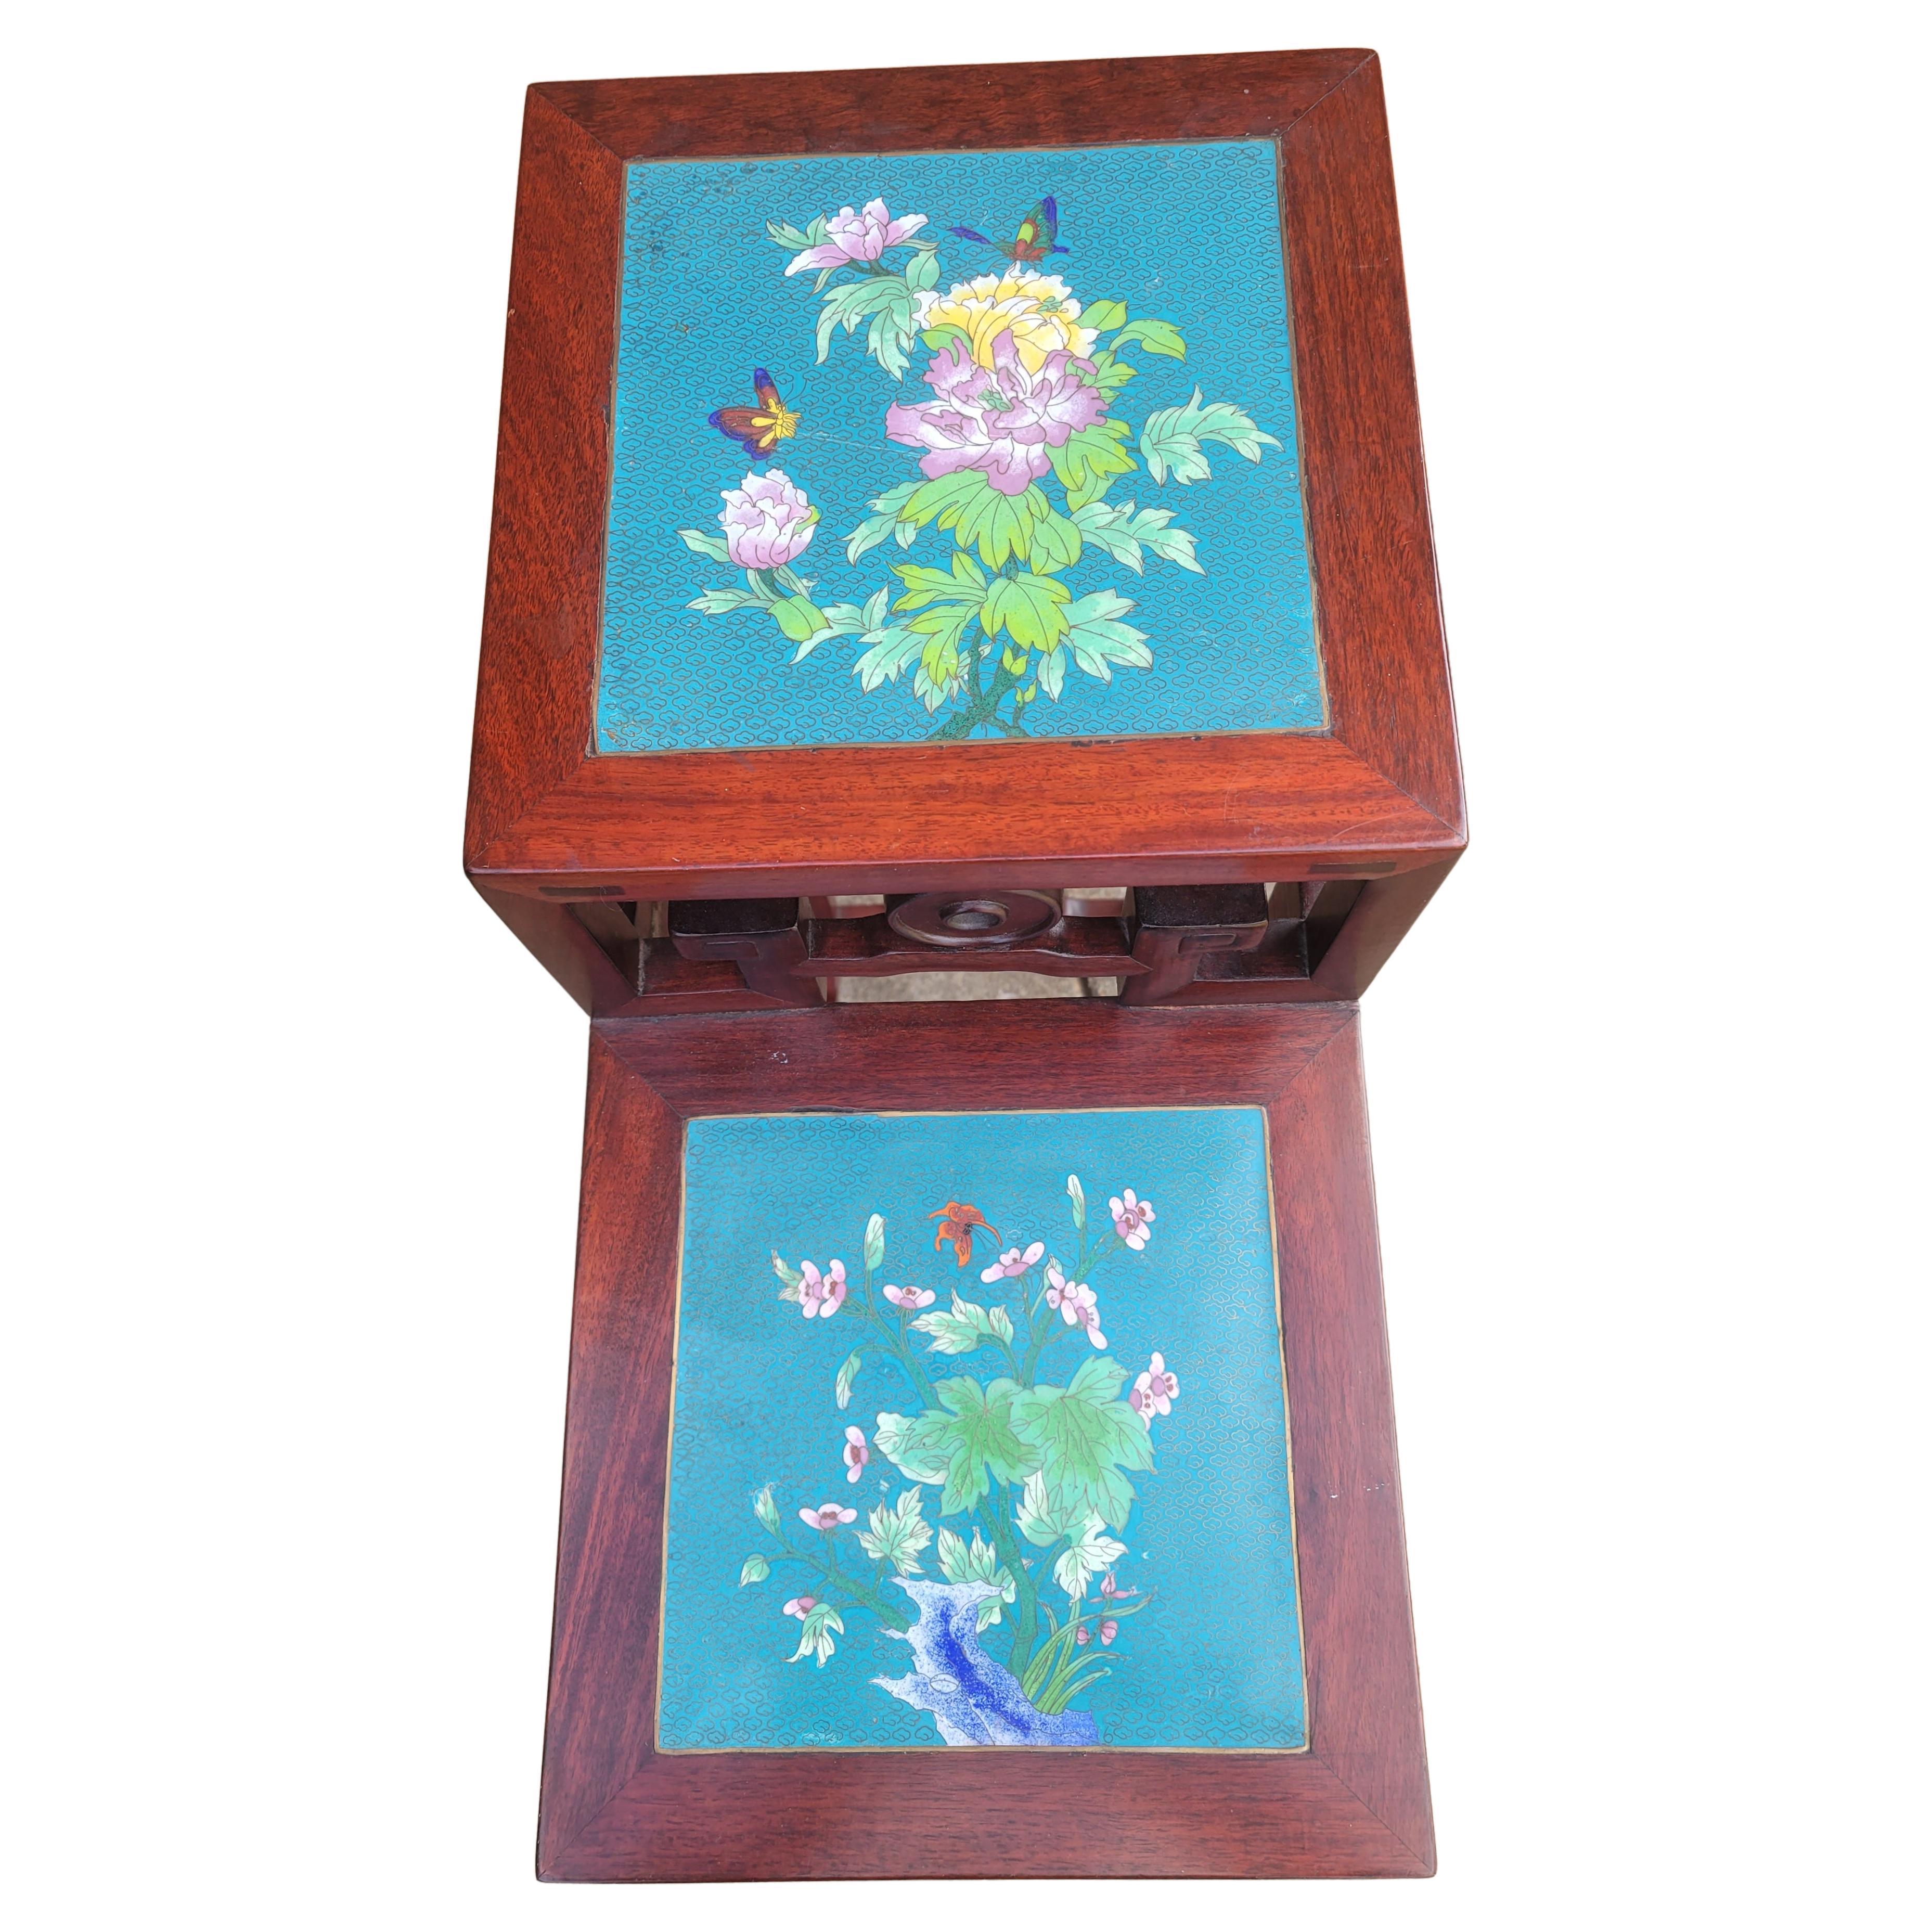 Table d'appoint chinoise ancienne en bois de rose sculpté et émail floral cloisonné à deux niveaux, support de fleurs. Palissandre reverni. Mesure 12,5